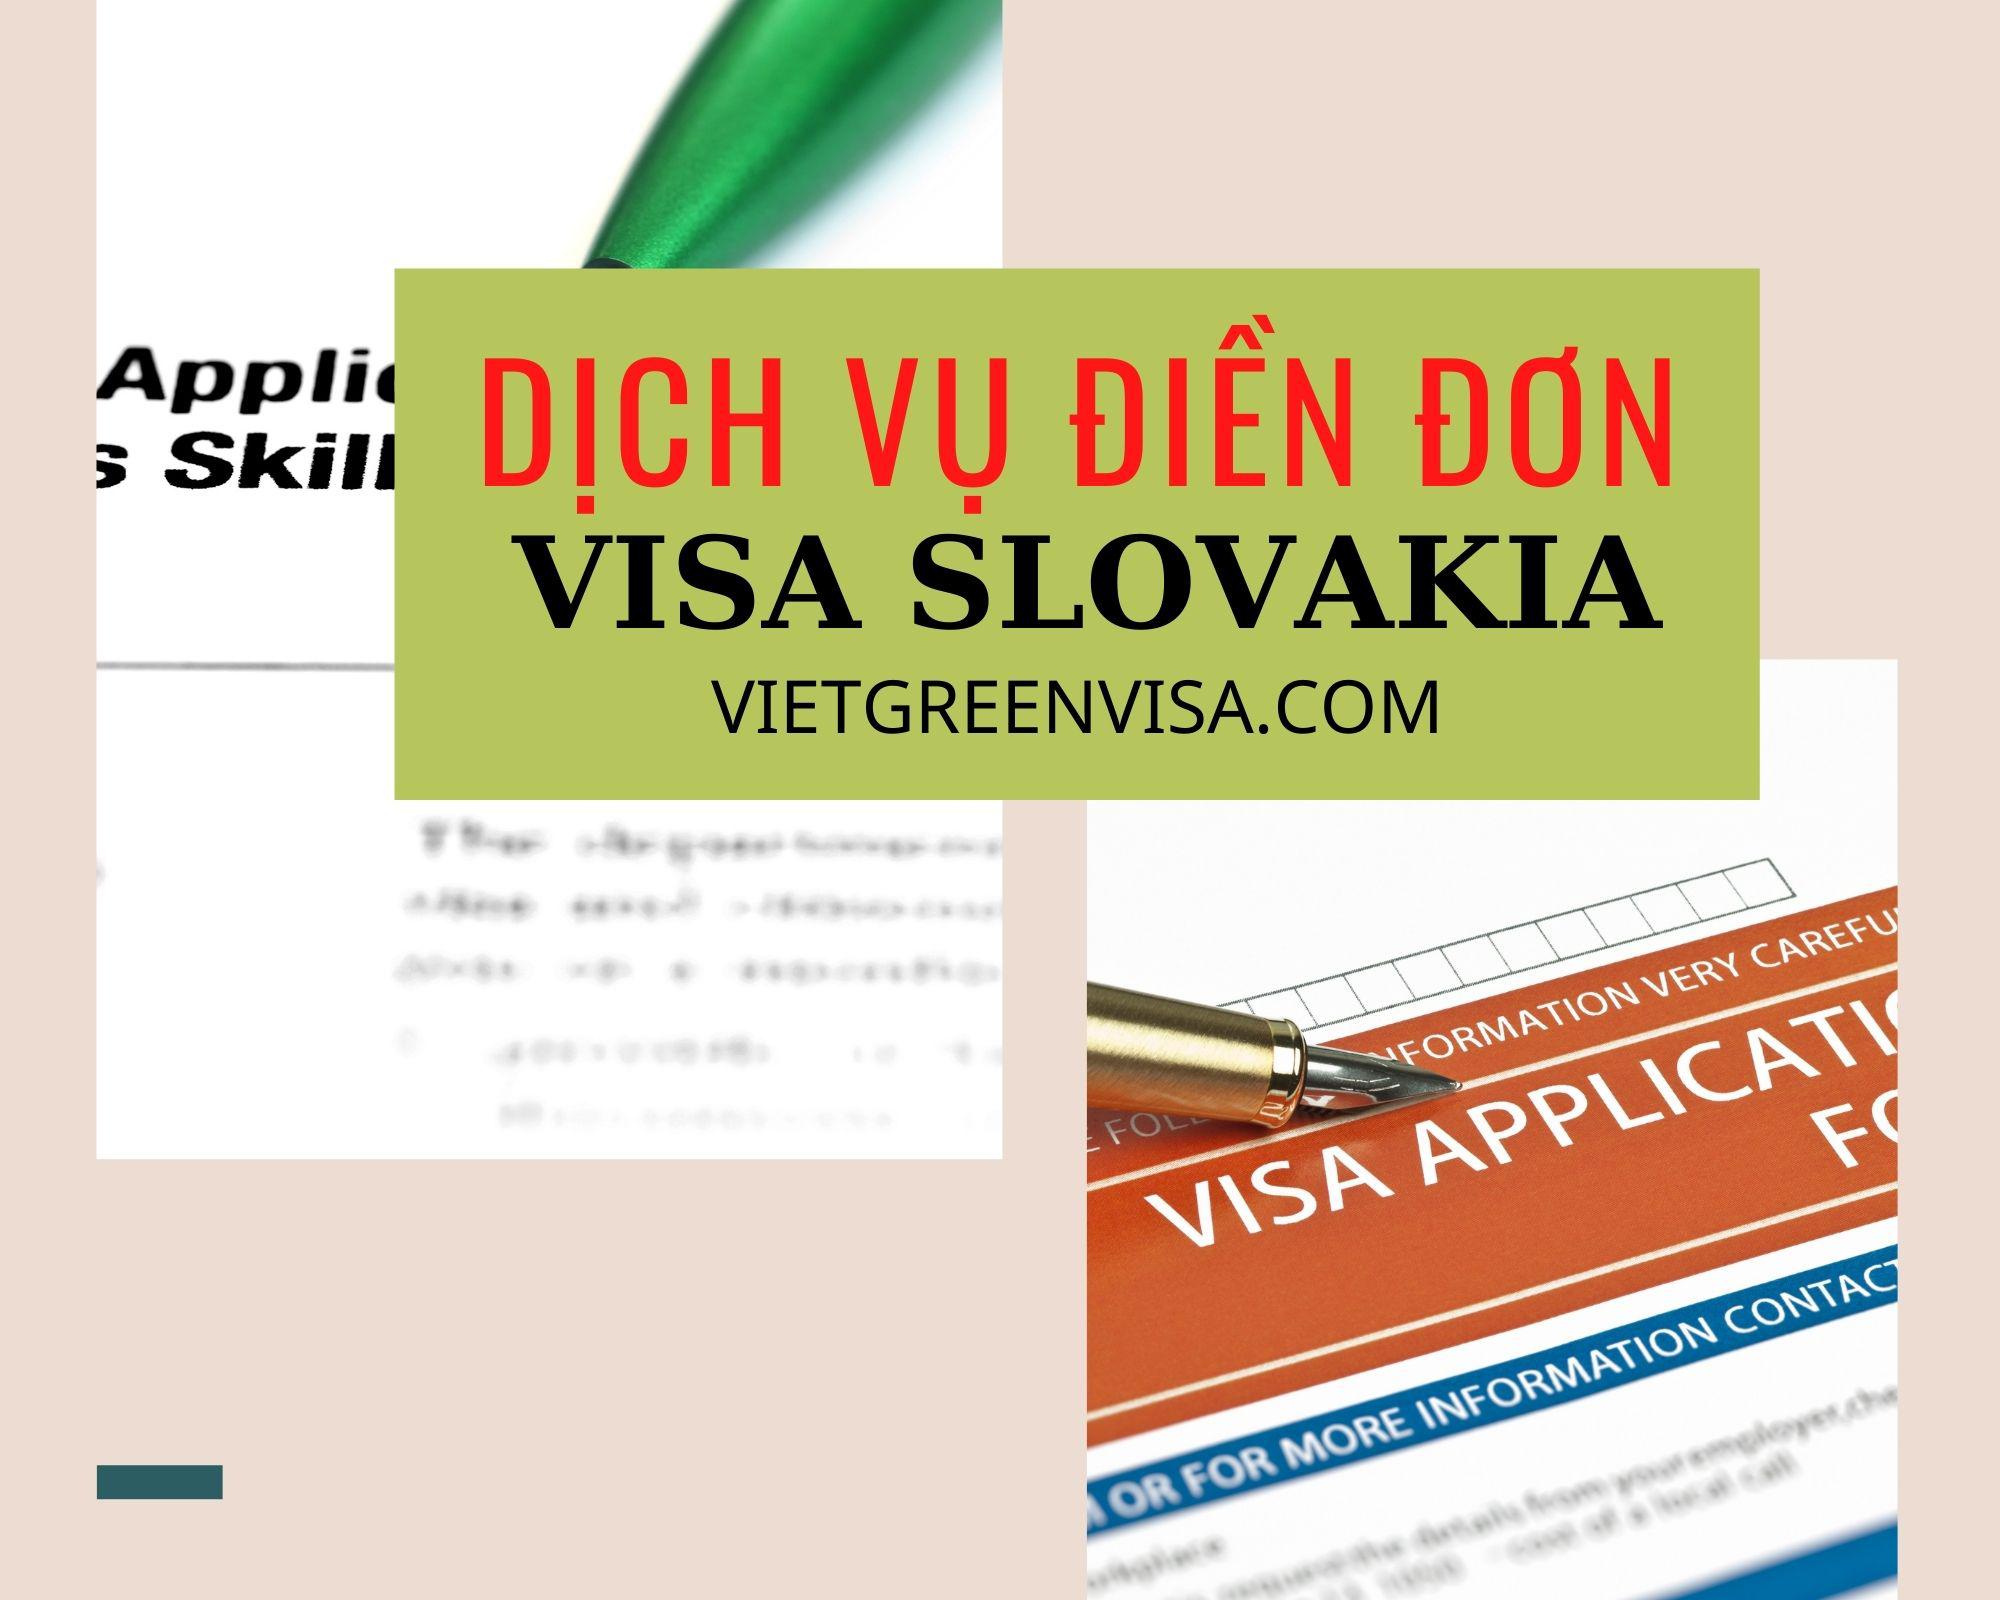 Dịch vụ điền đơn visa Slovakia online nhanh gọn